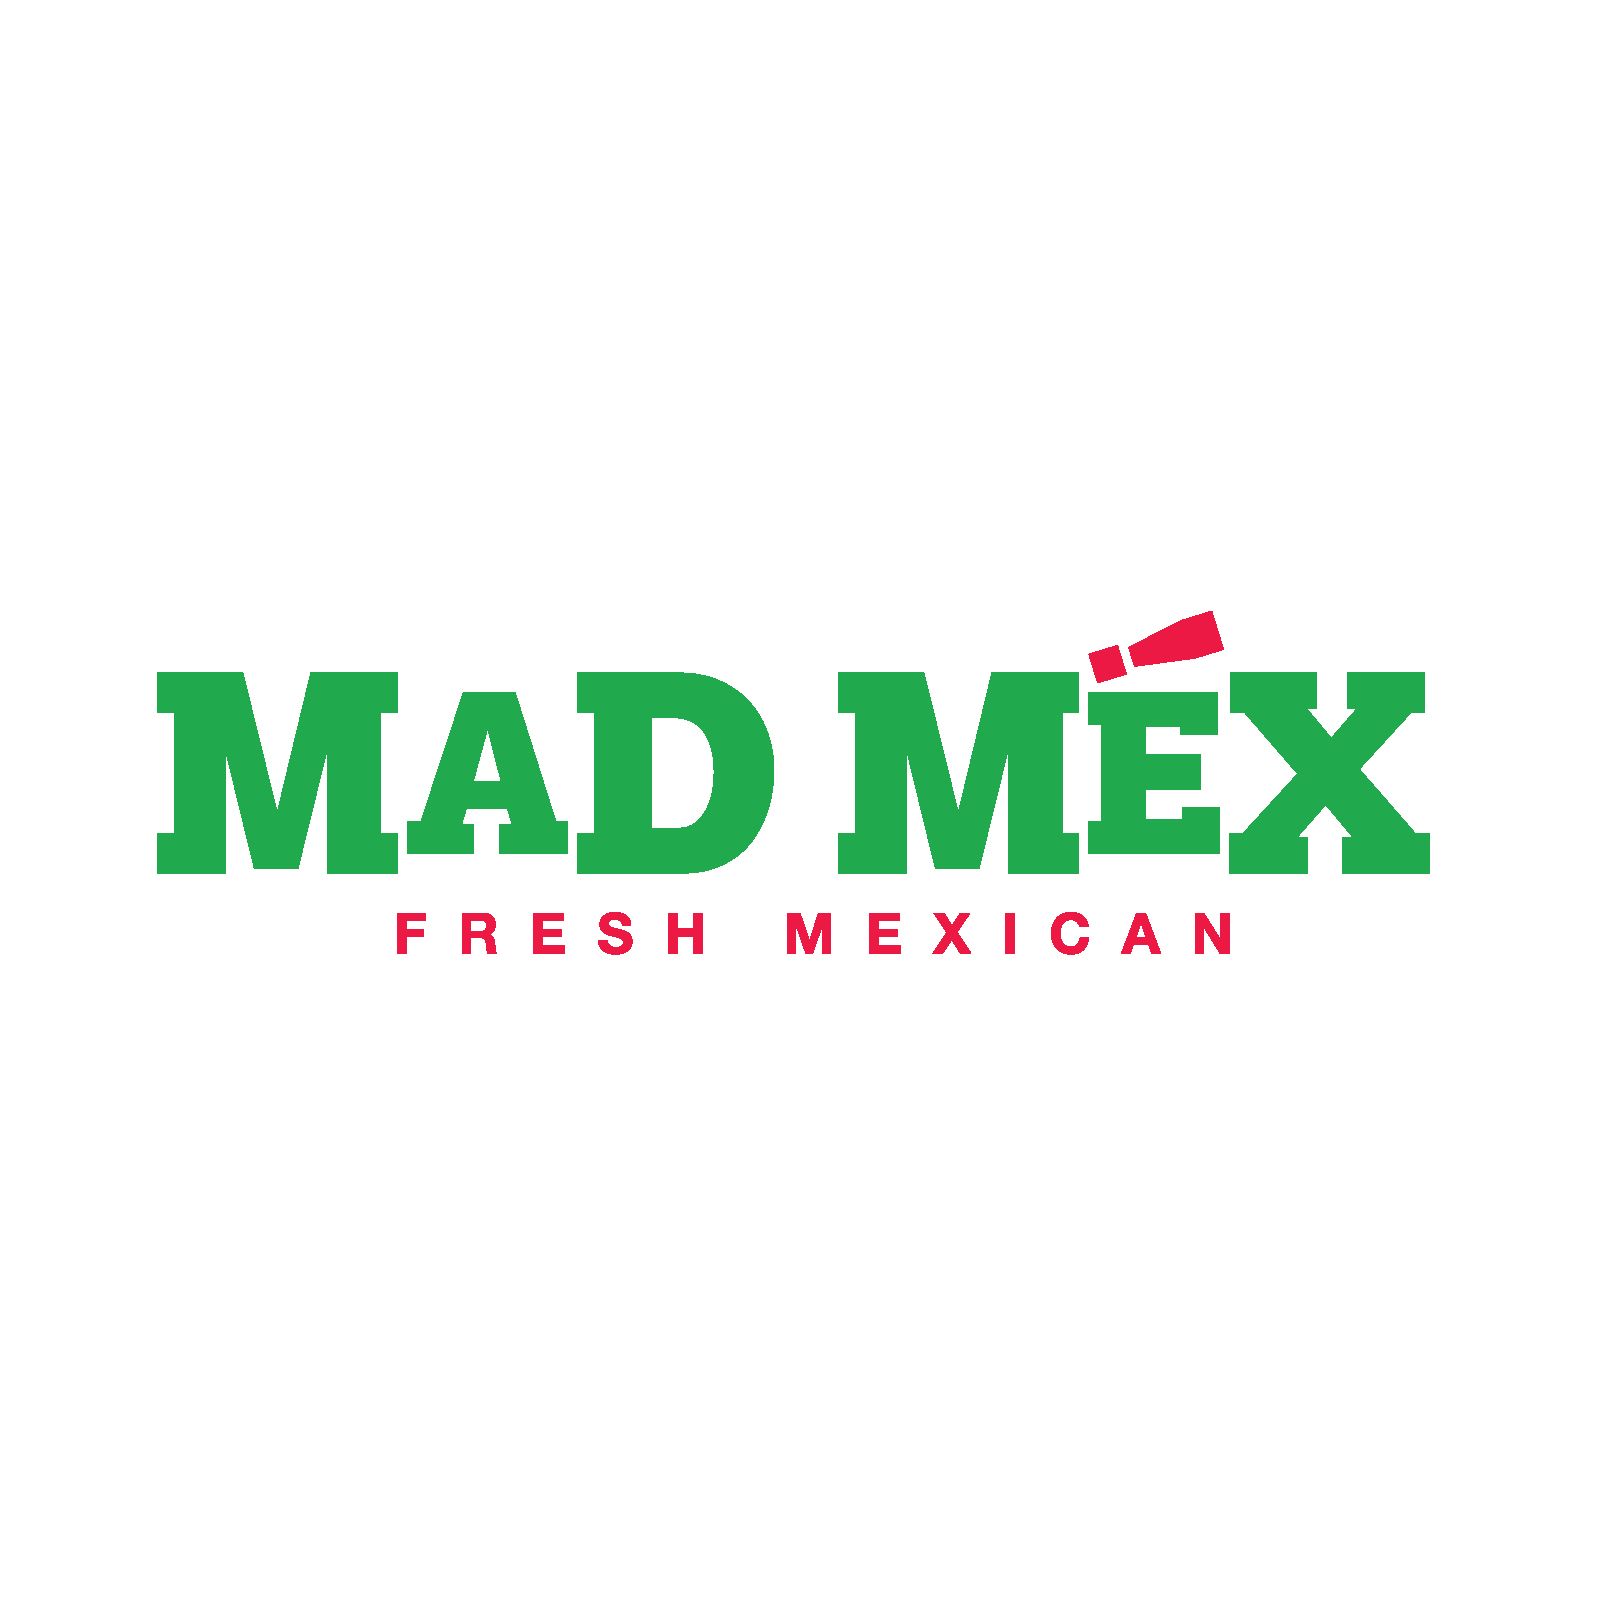 MAD MEX